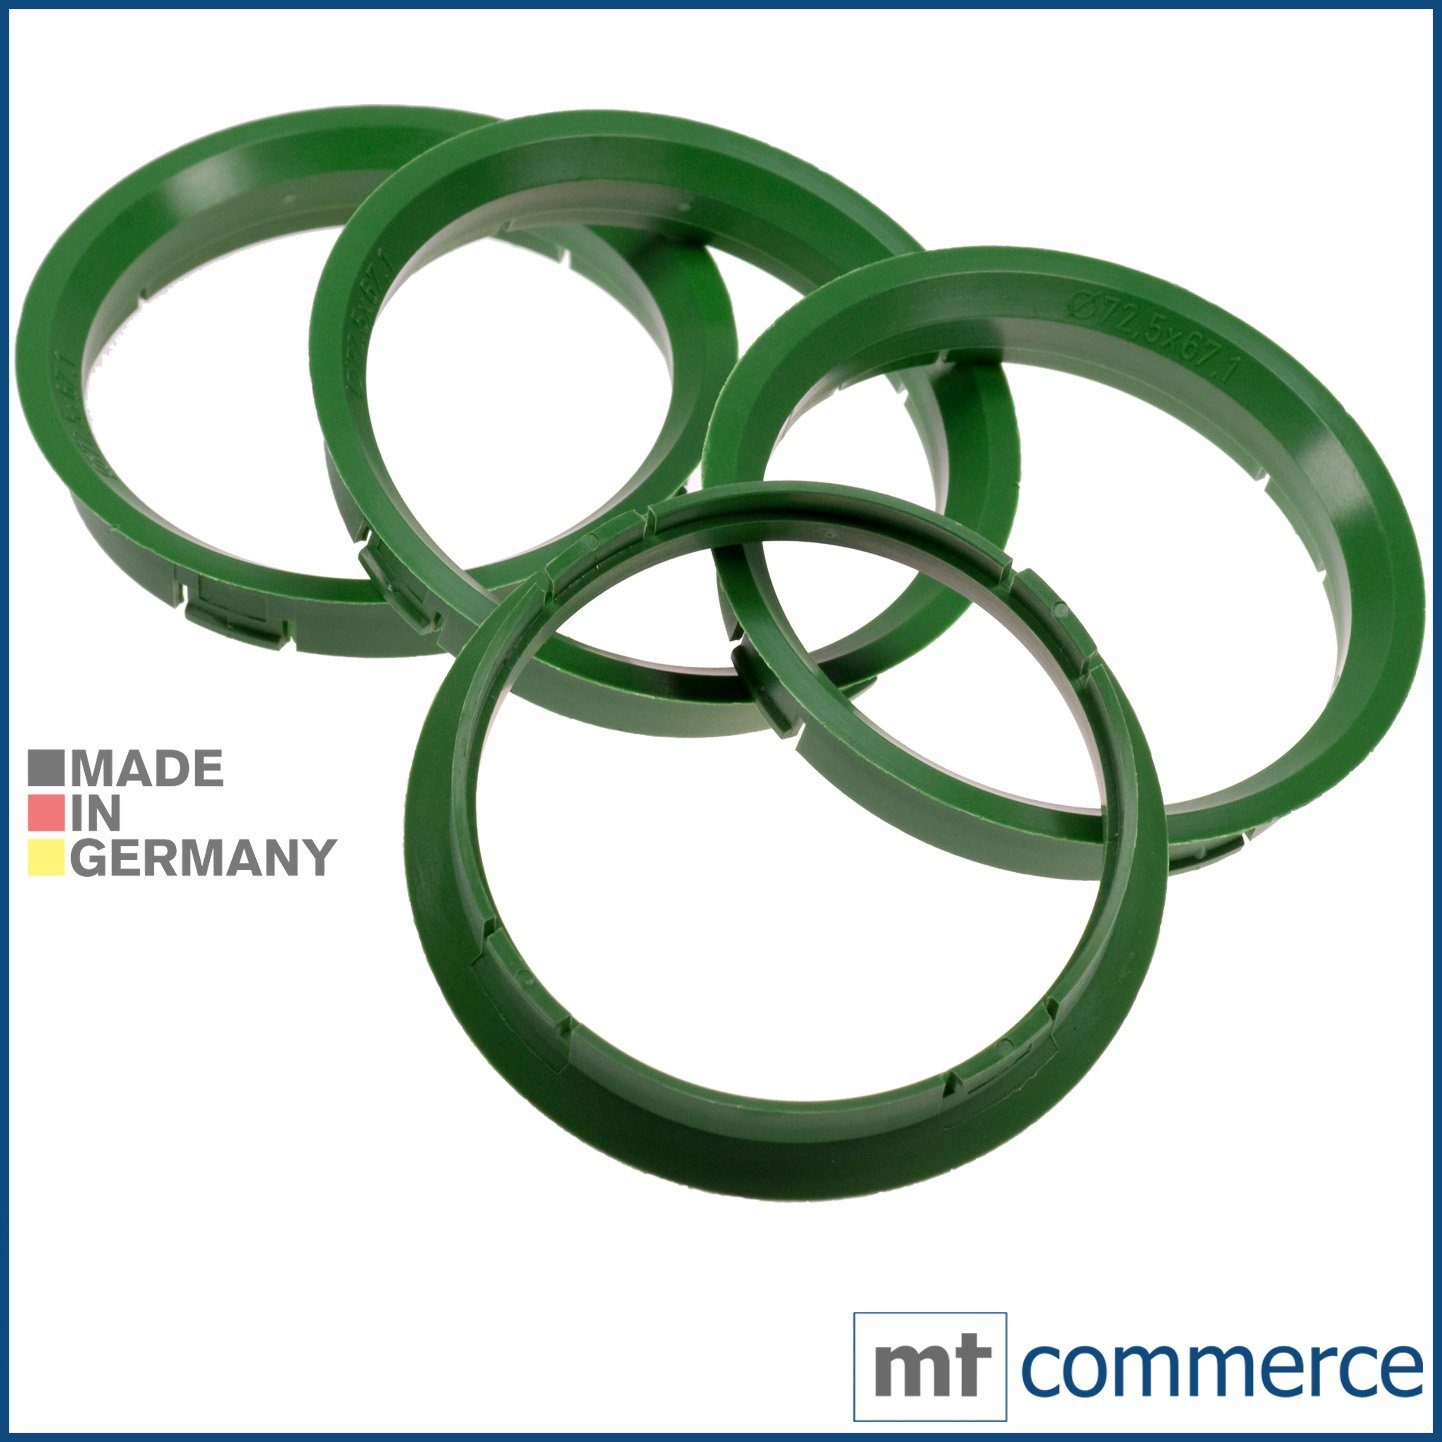 RKC Reifenstift 4X Zentrierringe grün Felgen Ringe Made in Germany, Maße: 72,5 x 67,1 mm